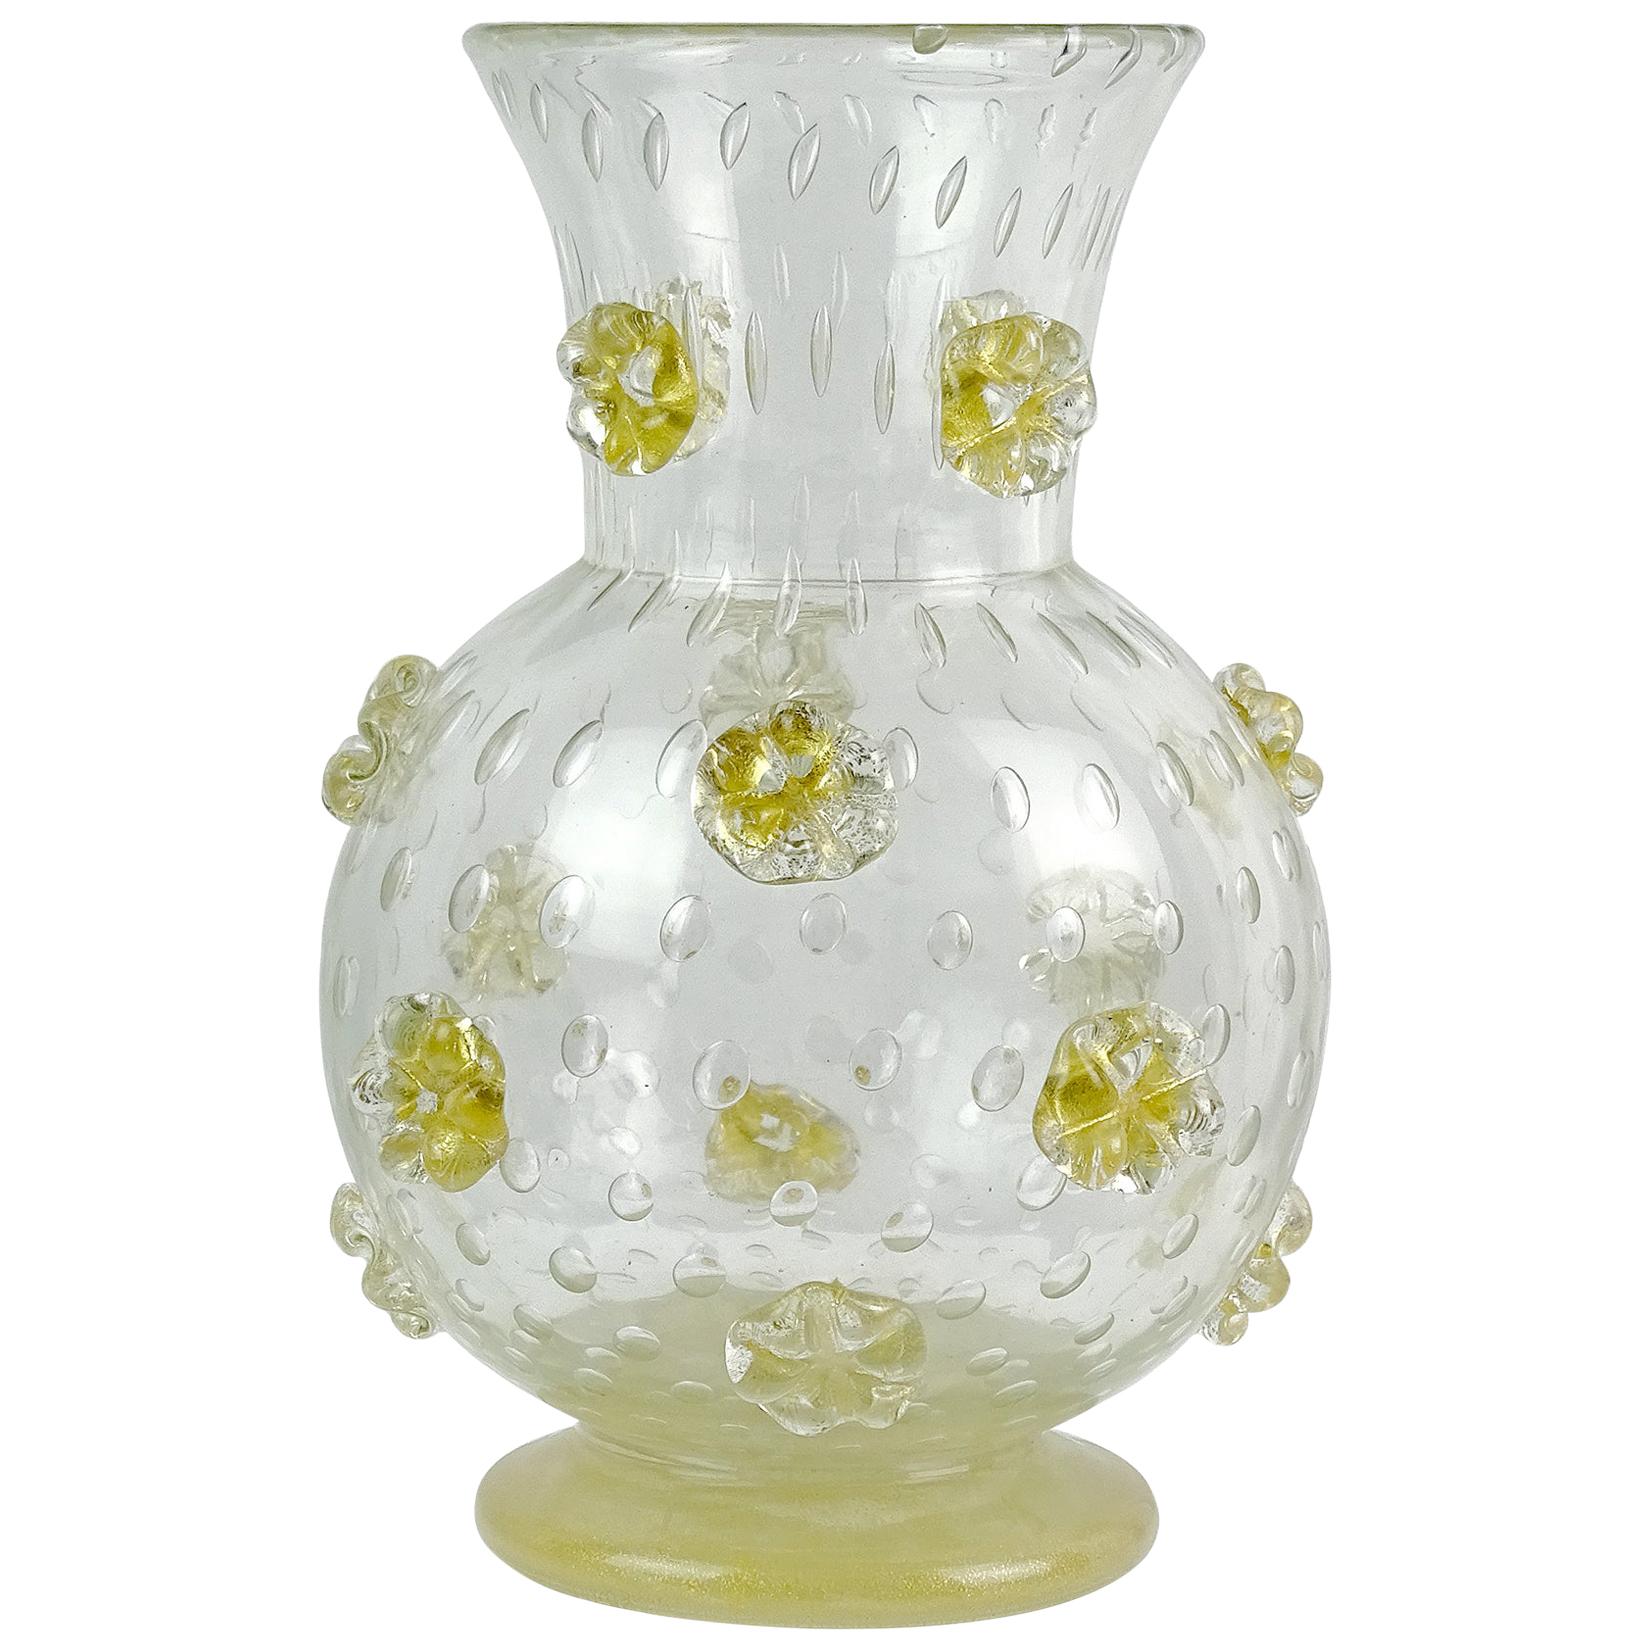 Ercole Barovier Murano 1942 a Stelle Gold Stars Italian Art Glass Flower Vase